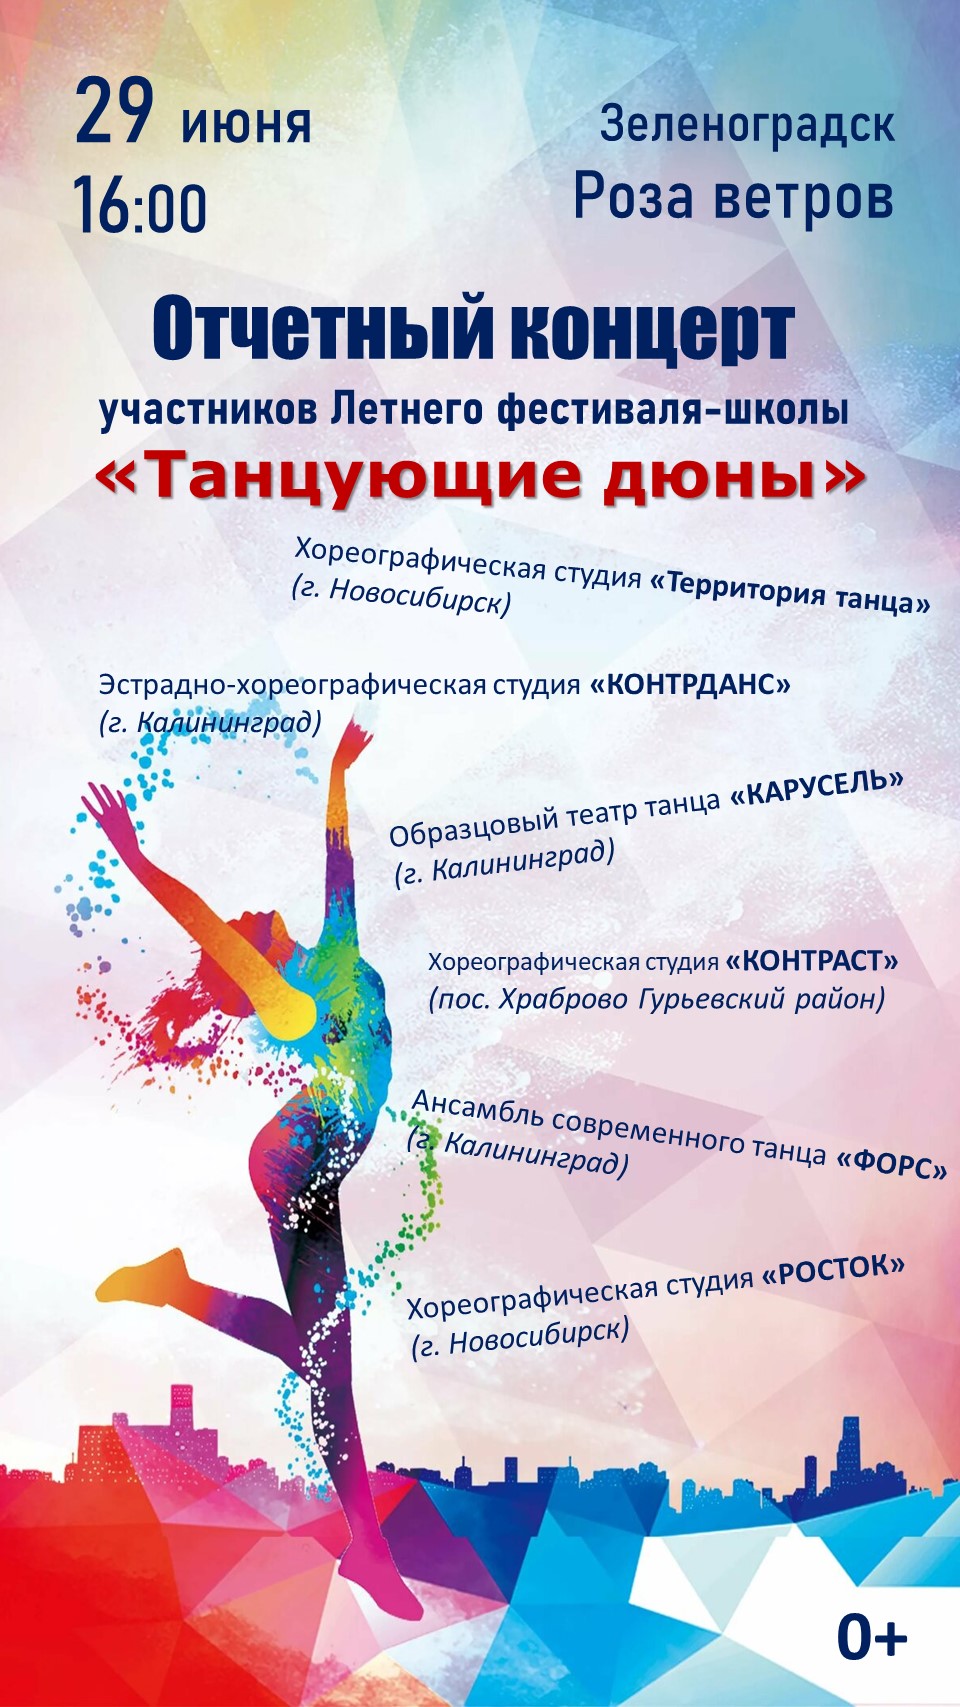 29 июня  Зеленоградске пройдет концерт участников Летнего фестиваля-школы «Танцующие дюны»